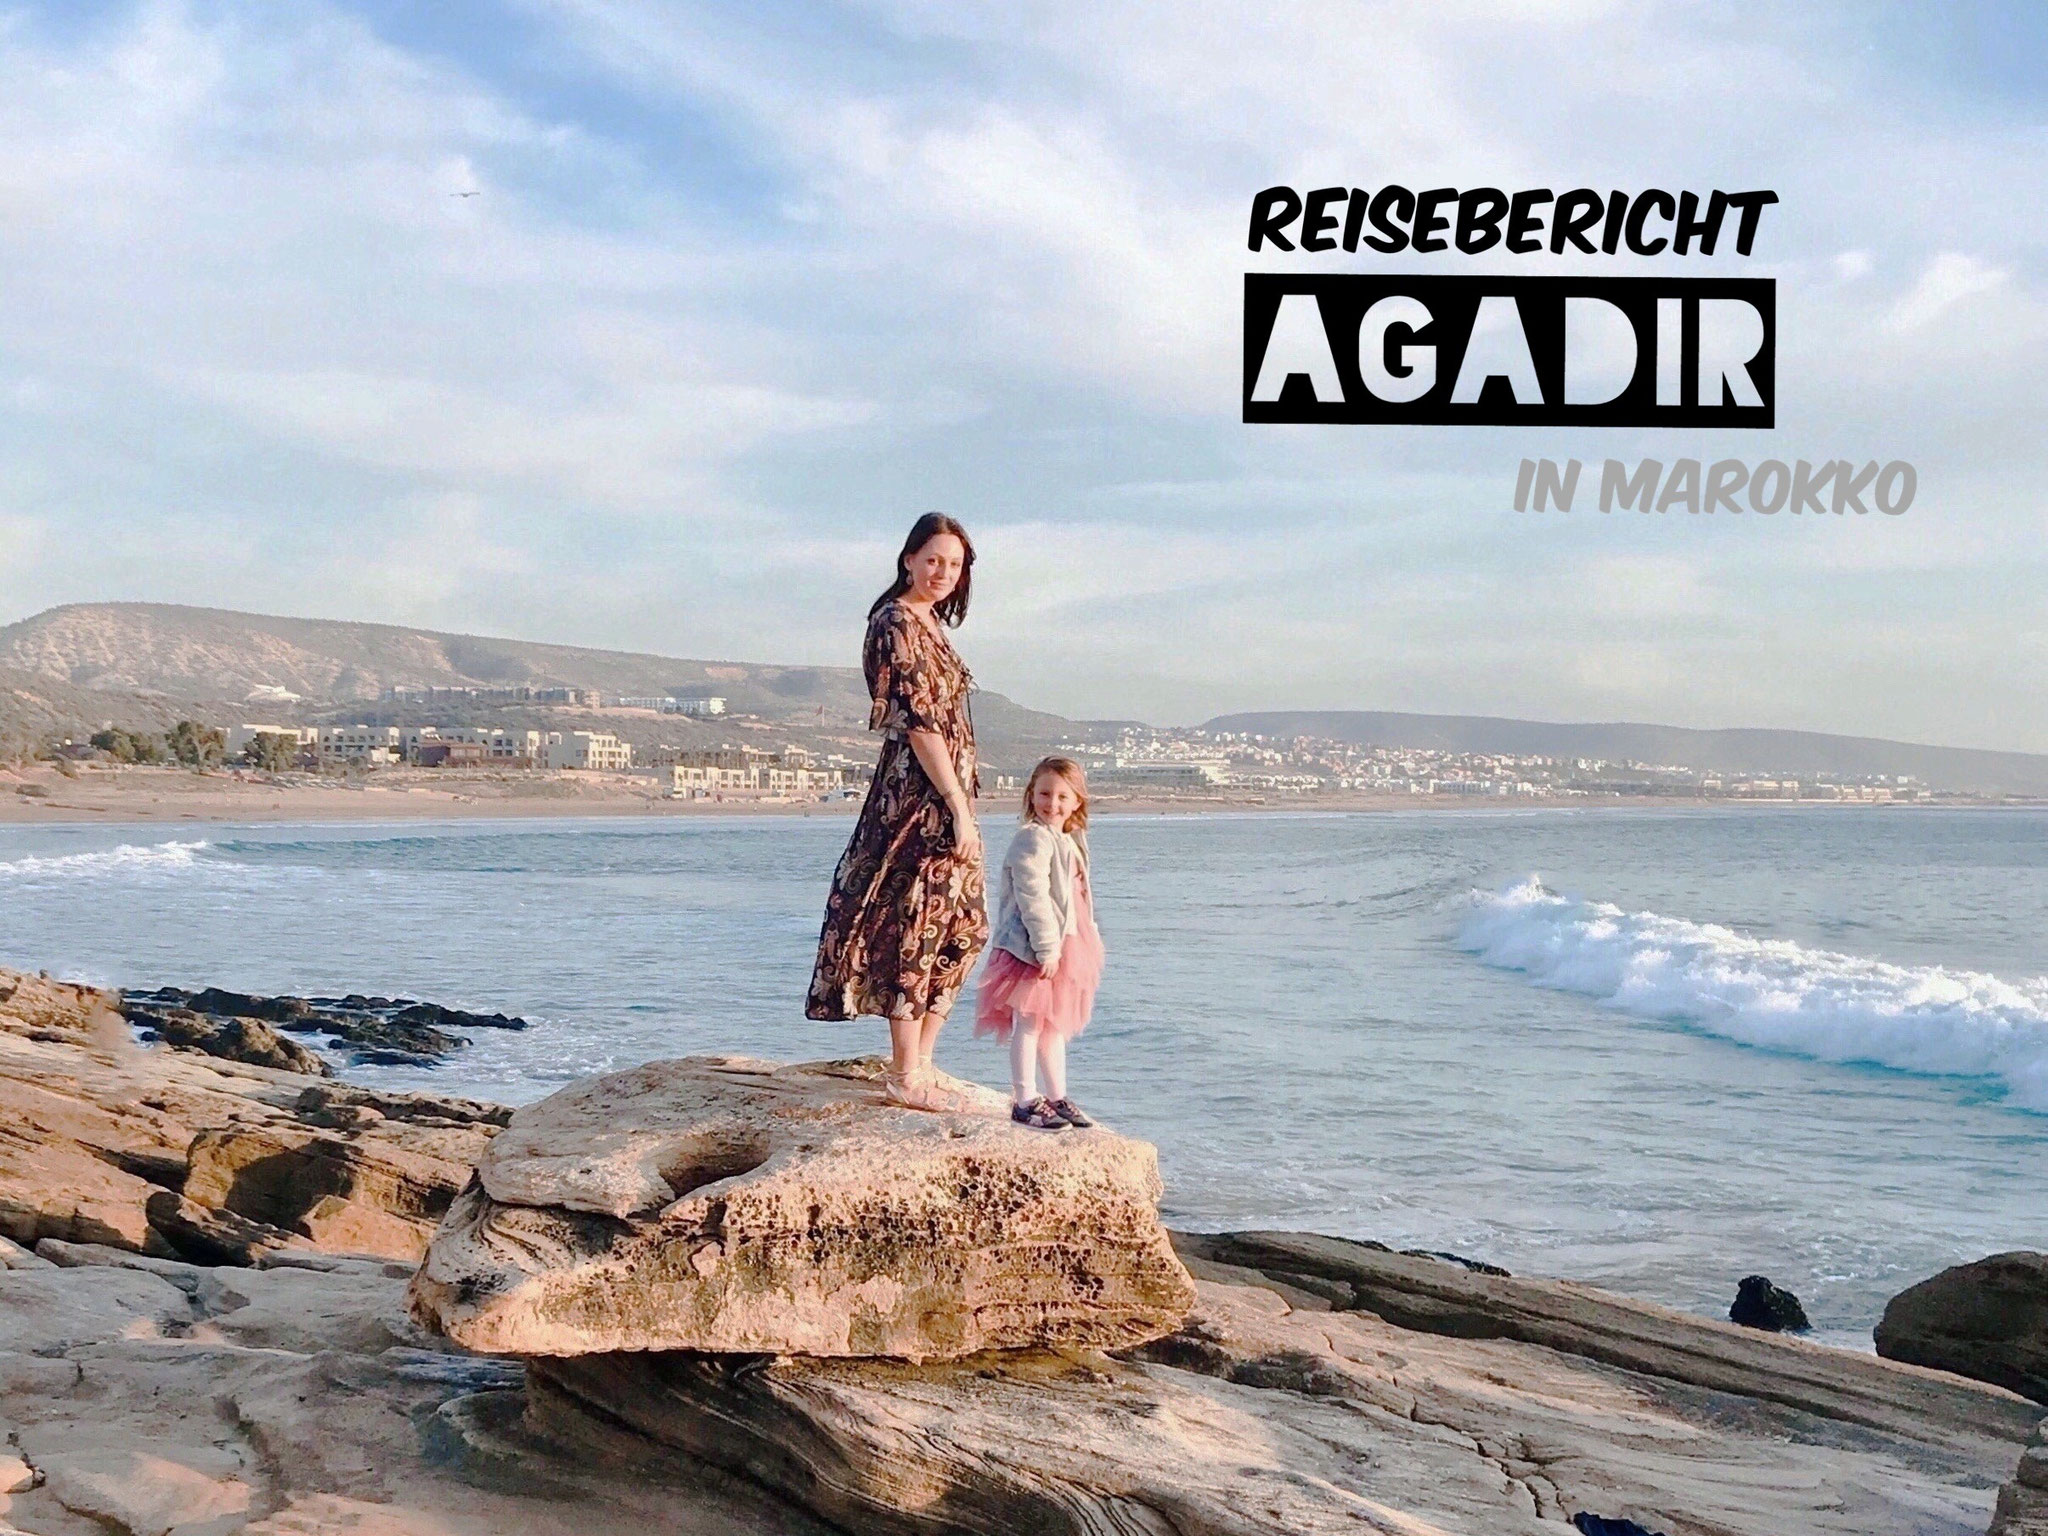 Reisebericht Agadir (Marokko)